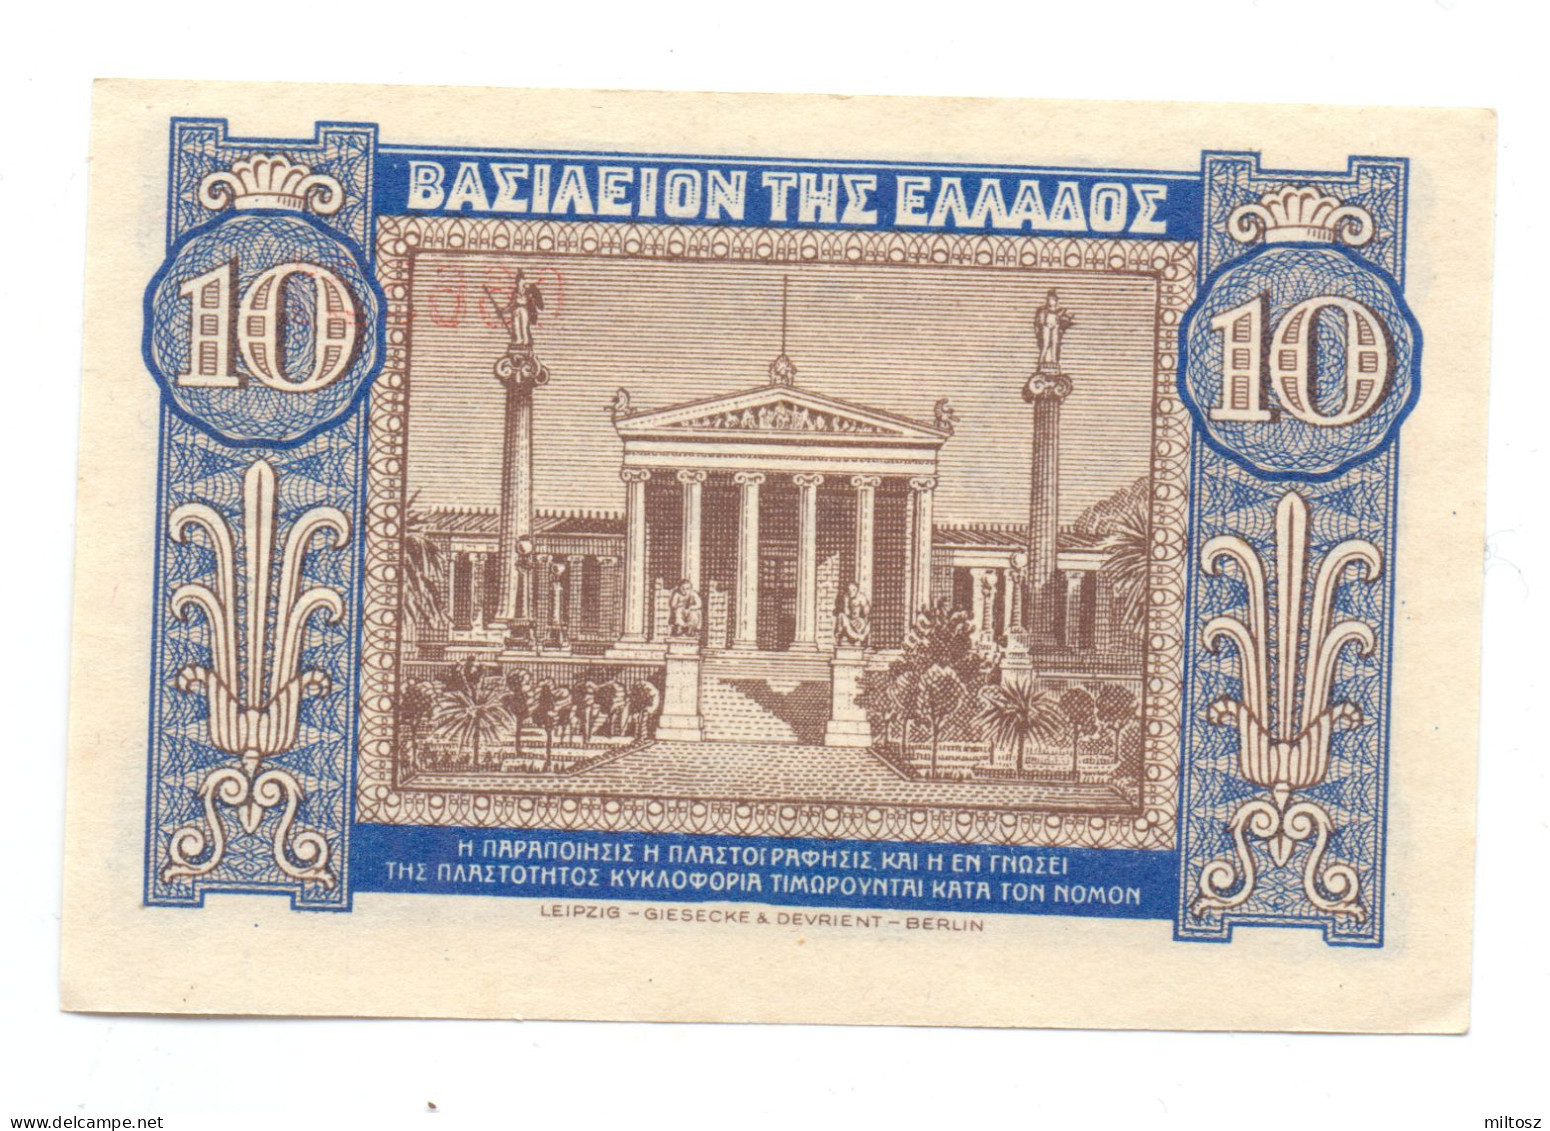 Greece 10 Drachmas 1940 - Greece